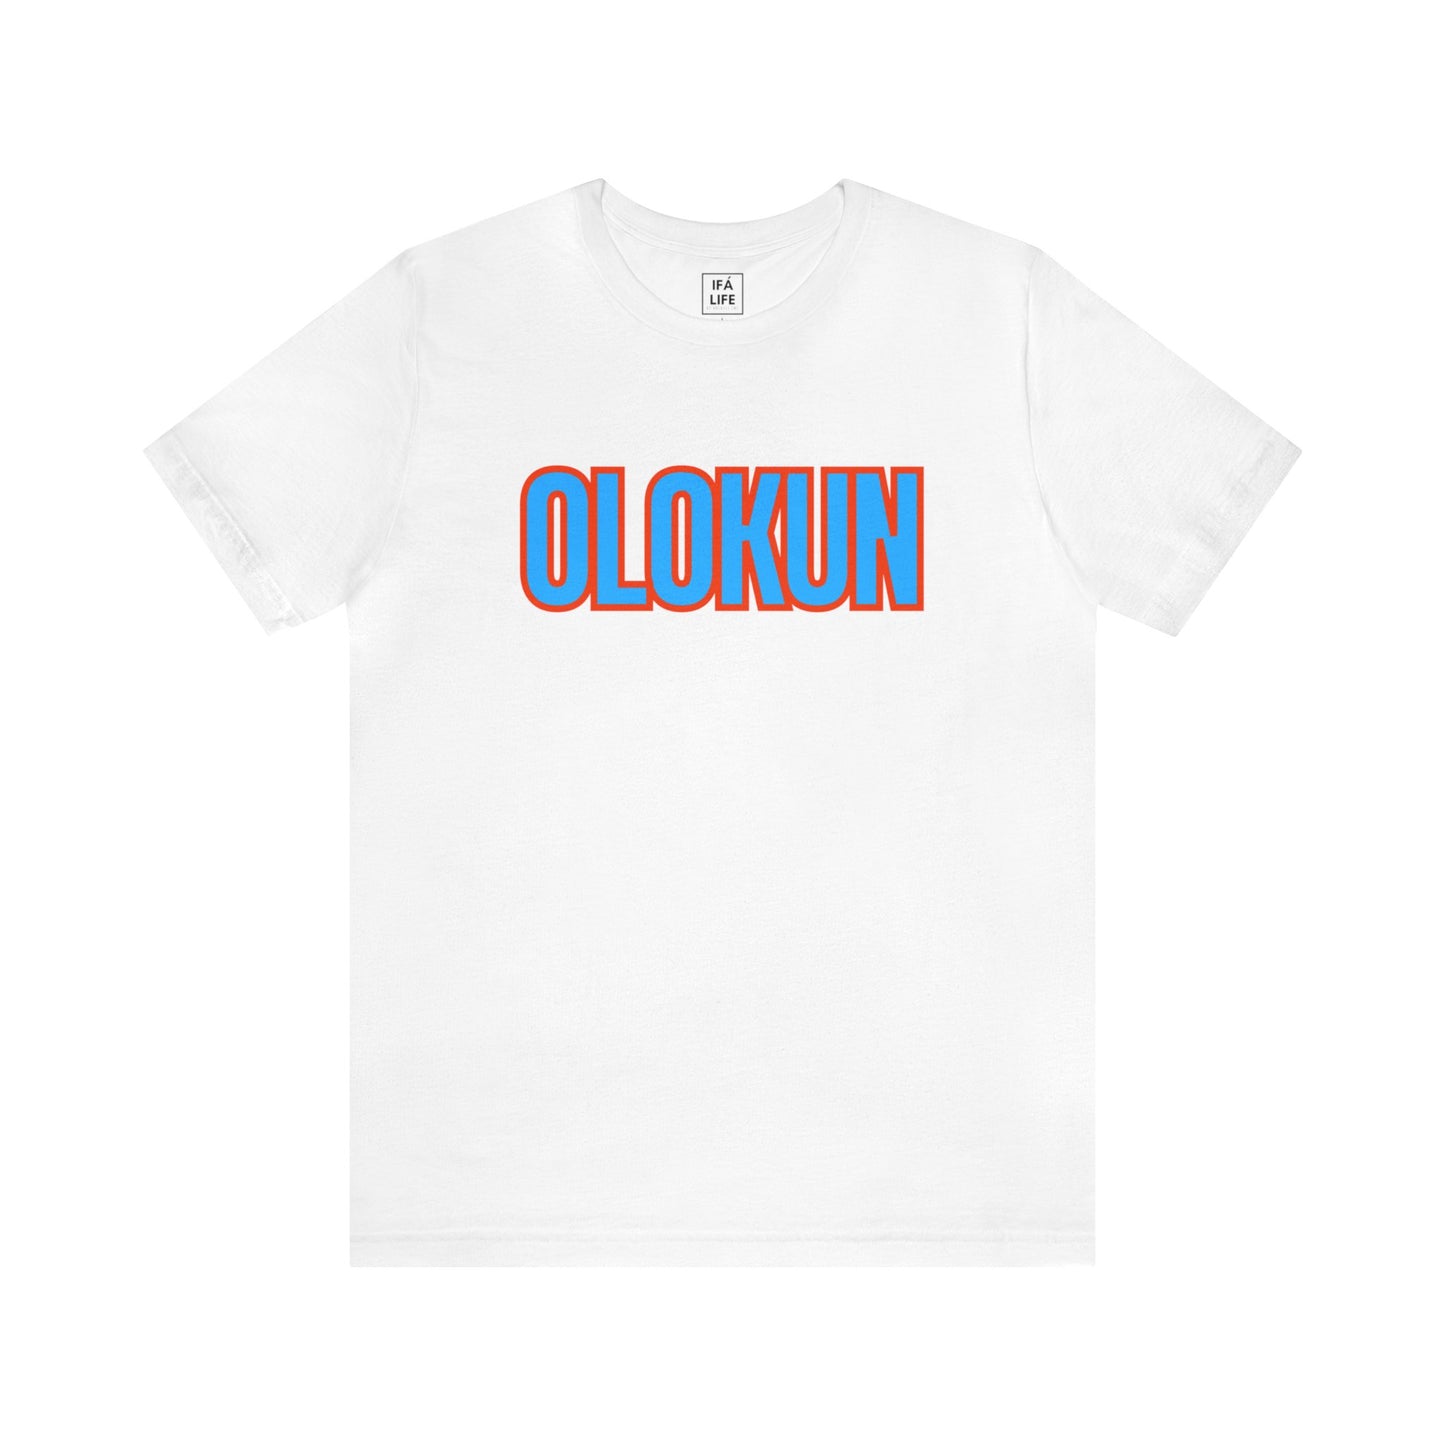 OLOKUN ORISHA Unisex T-shirt